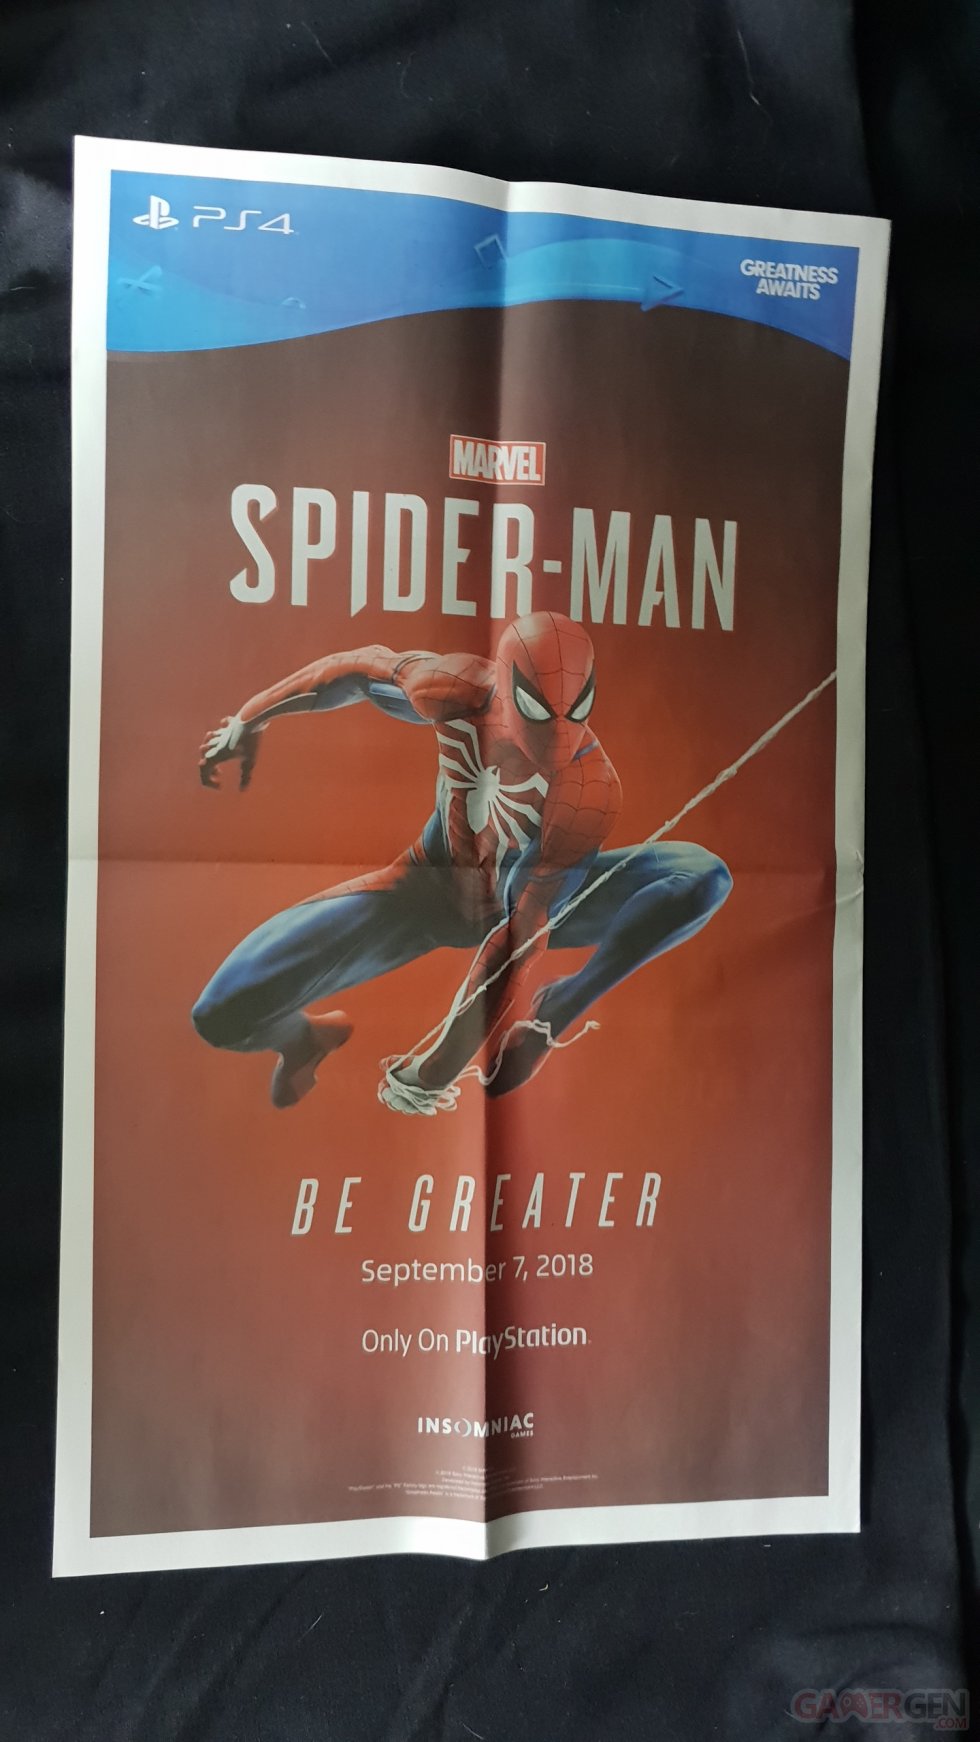 Unboxing - Spider-Man - Kit Presse - 20180910_010429 - 053